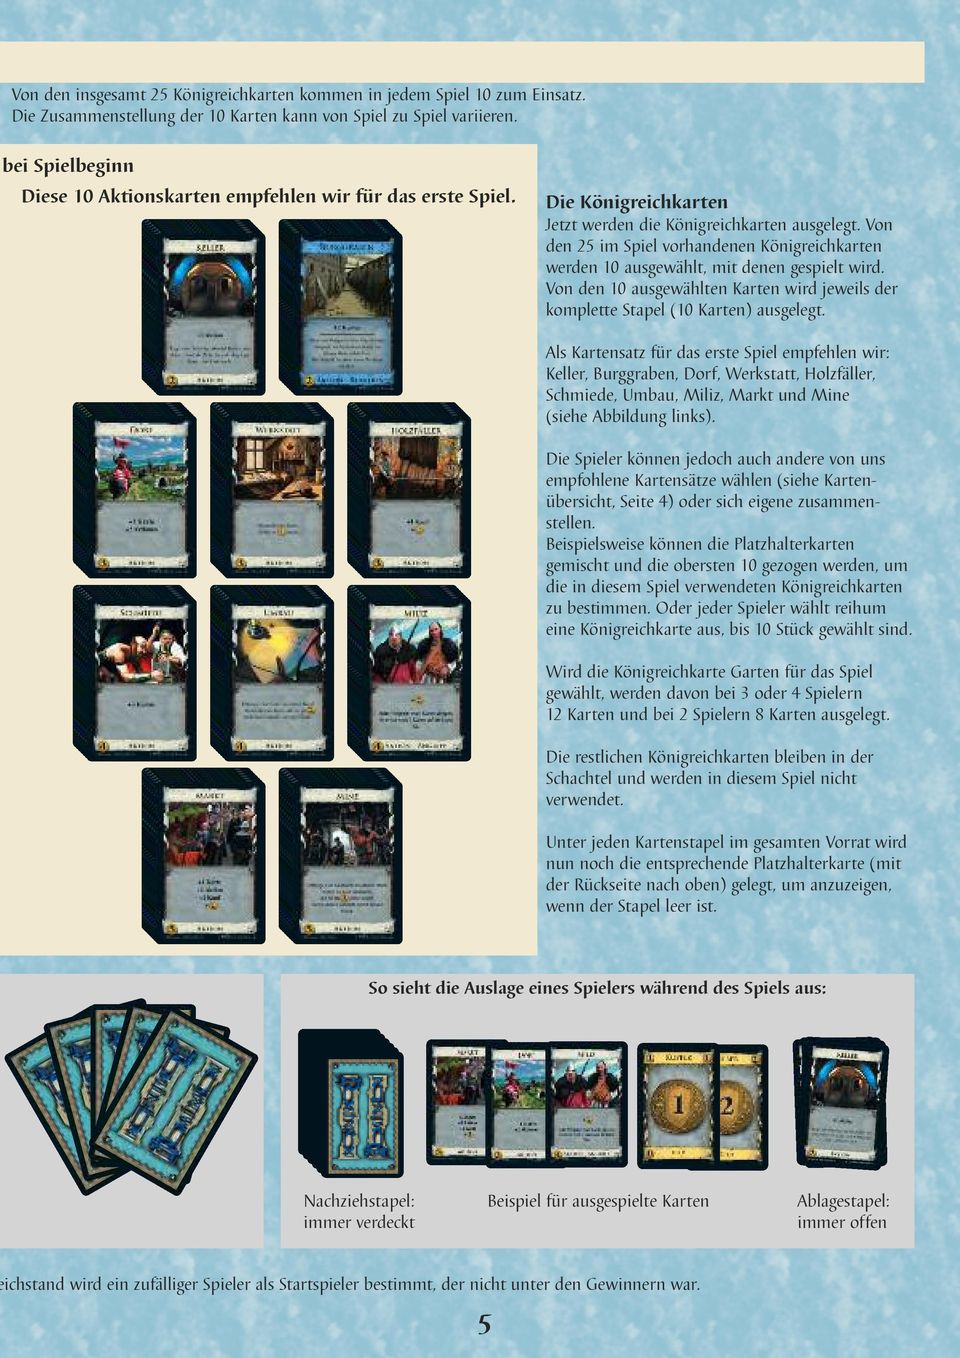 Von den 25 im Spiel vorhandenen Königreichkarten werden 10 ausgewählt, mit denen gespielt wird. Von den 10 ausgewählten Karten wird jeweils der komplette Stapel (10 Karten) ausgelegt.